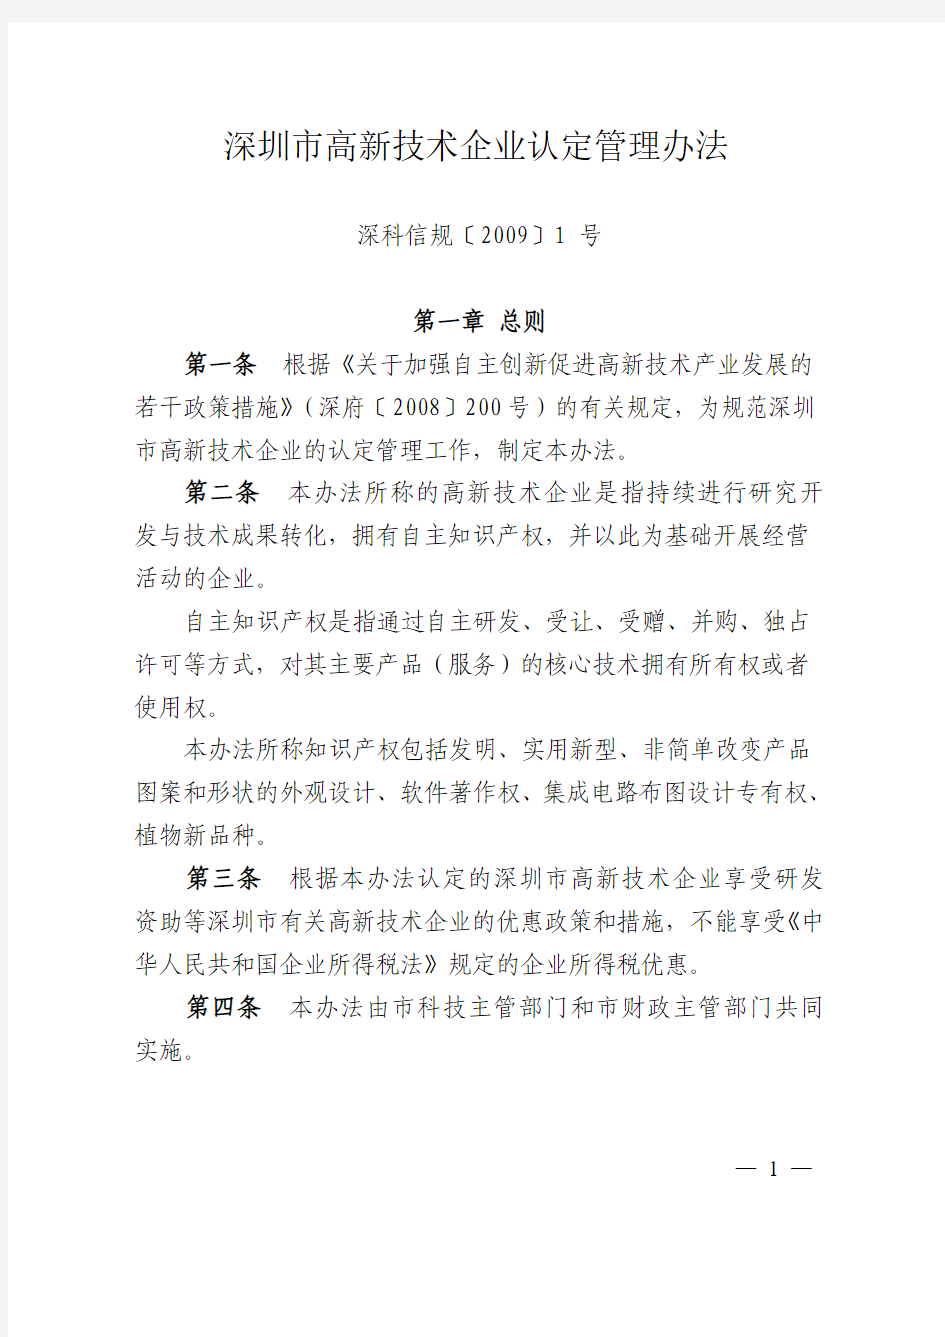 《深圳市高新技术企业认定管理办法》(深科信规〔2009〕1 号)